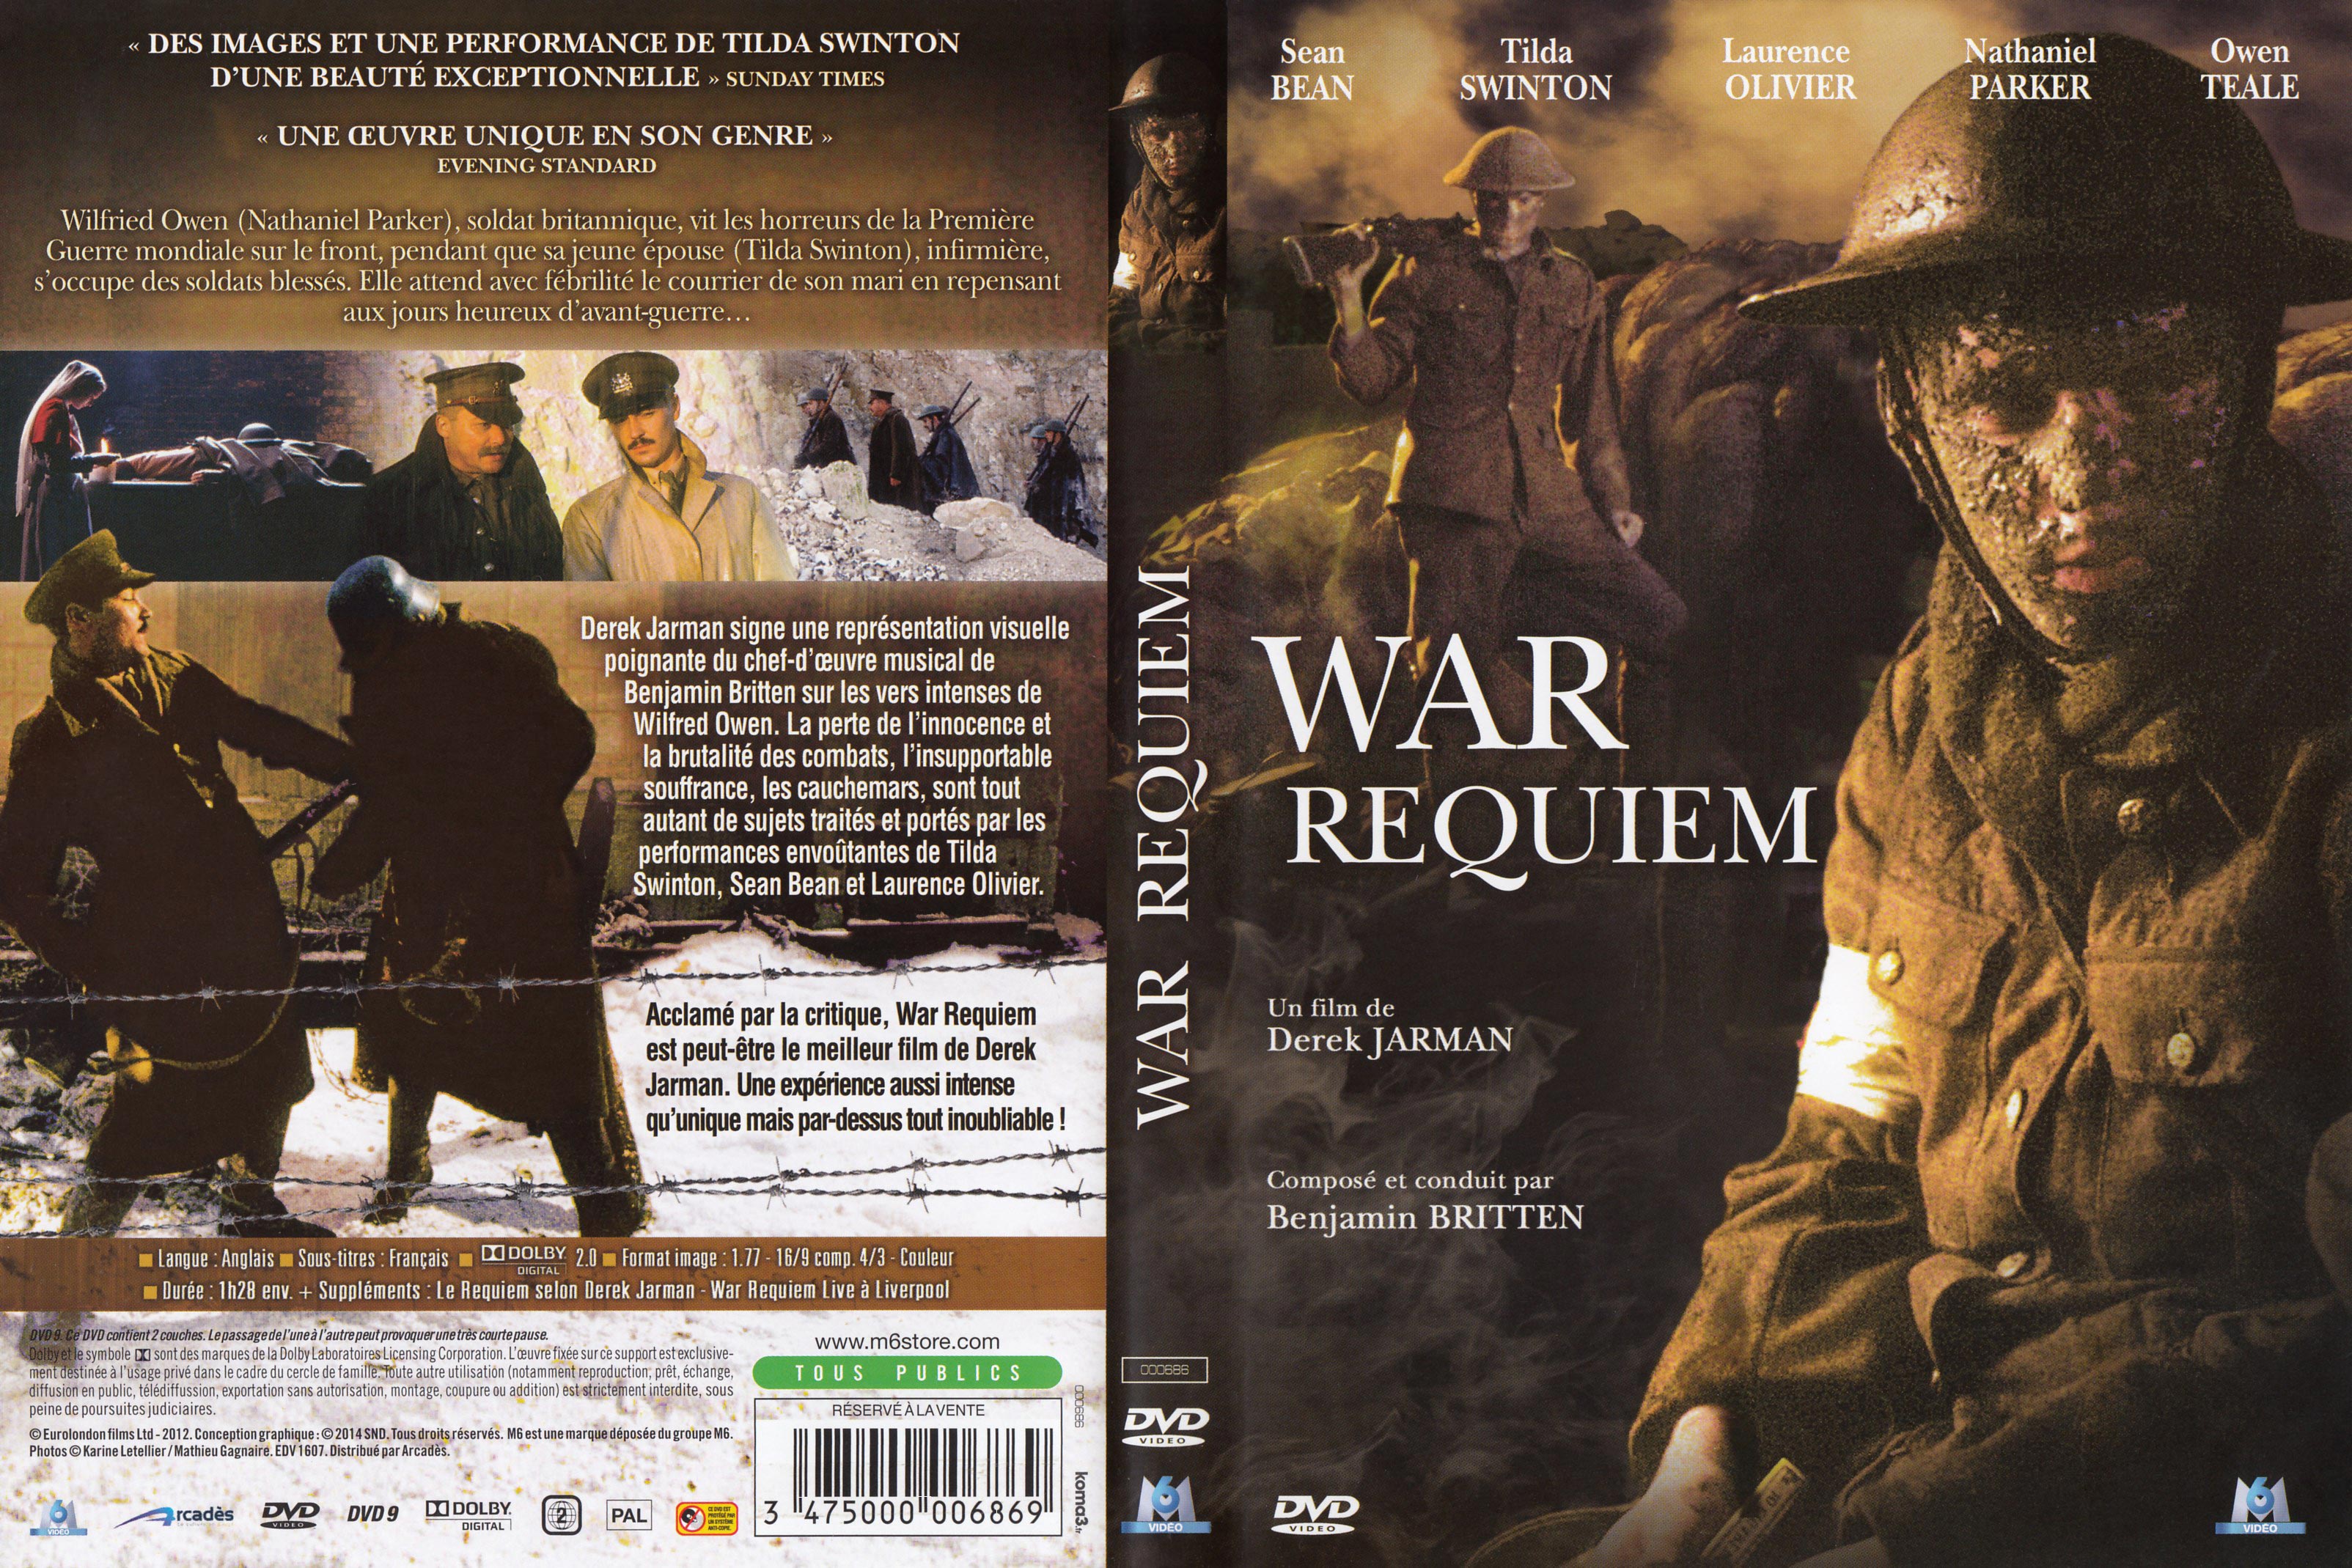 Jaquette DVD War requiem